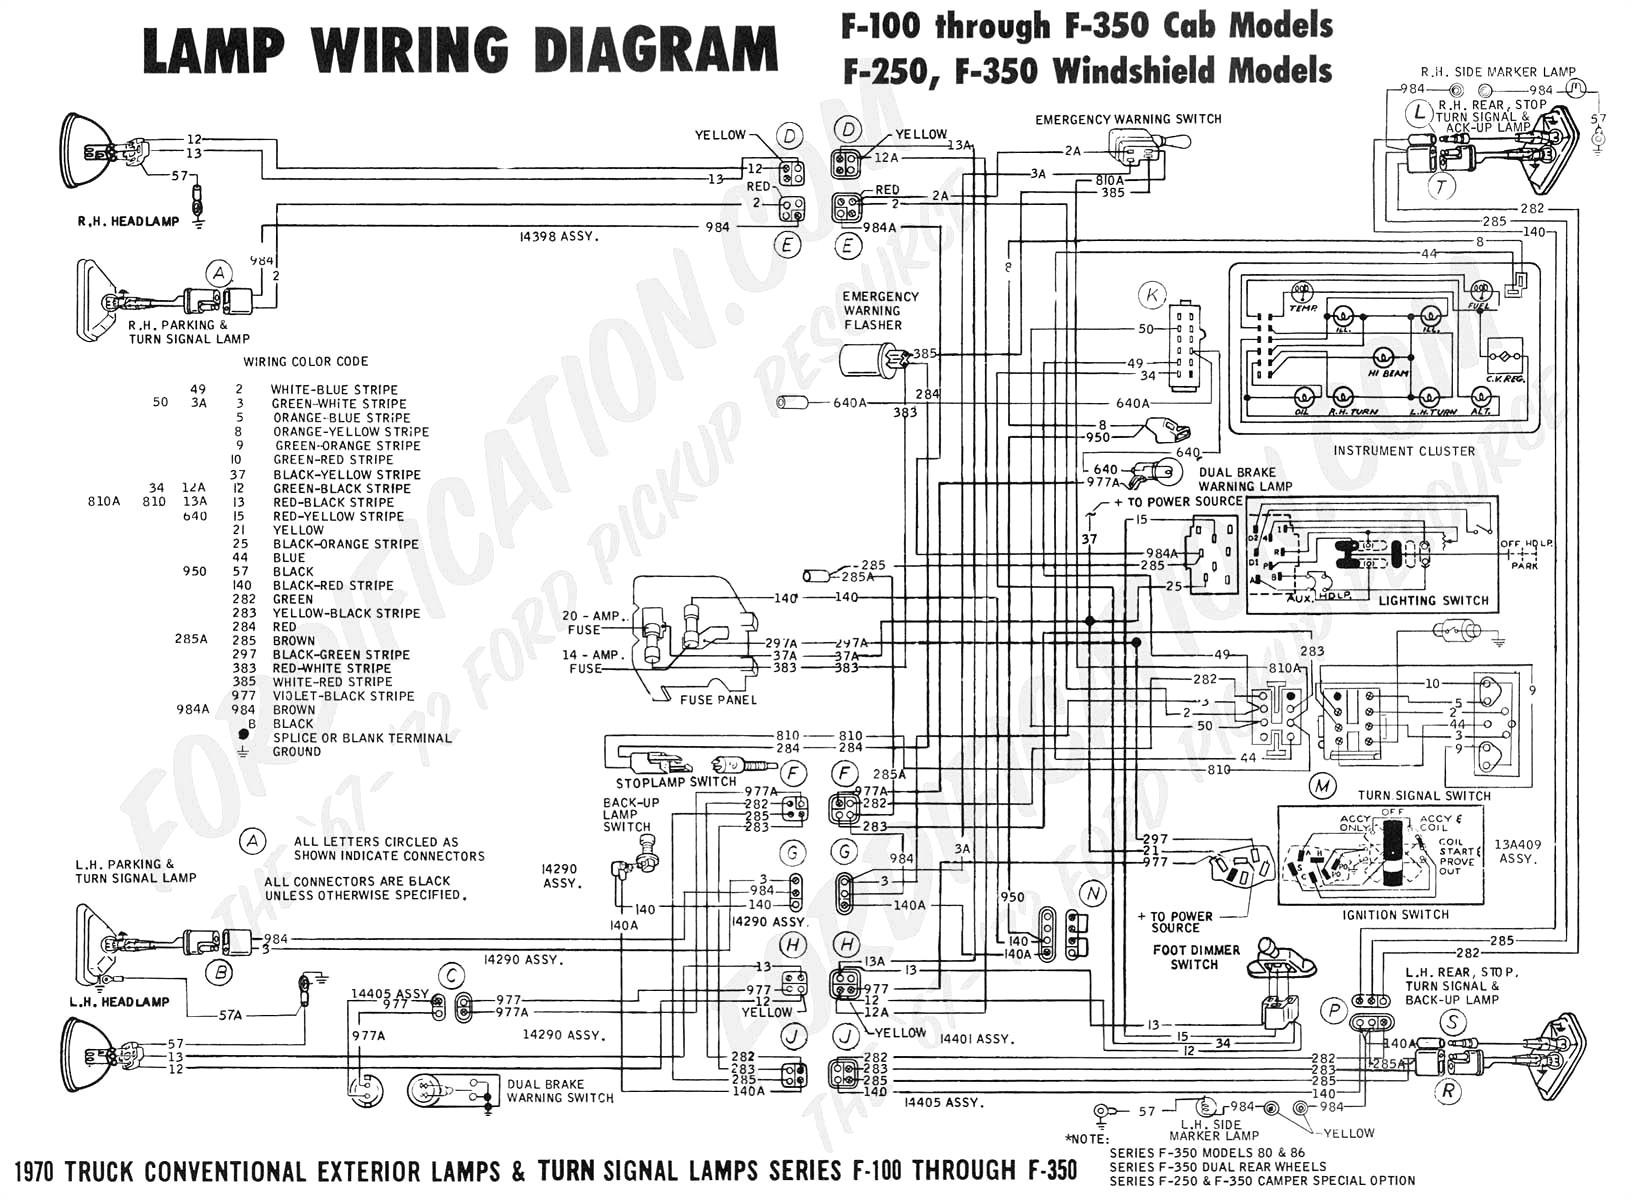 05f 250 fog light wiring diagram wiring diagram toolbox 05f 250 fog light wiring diagram